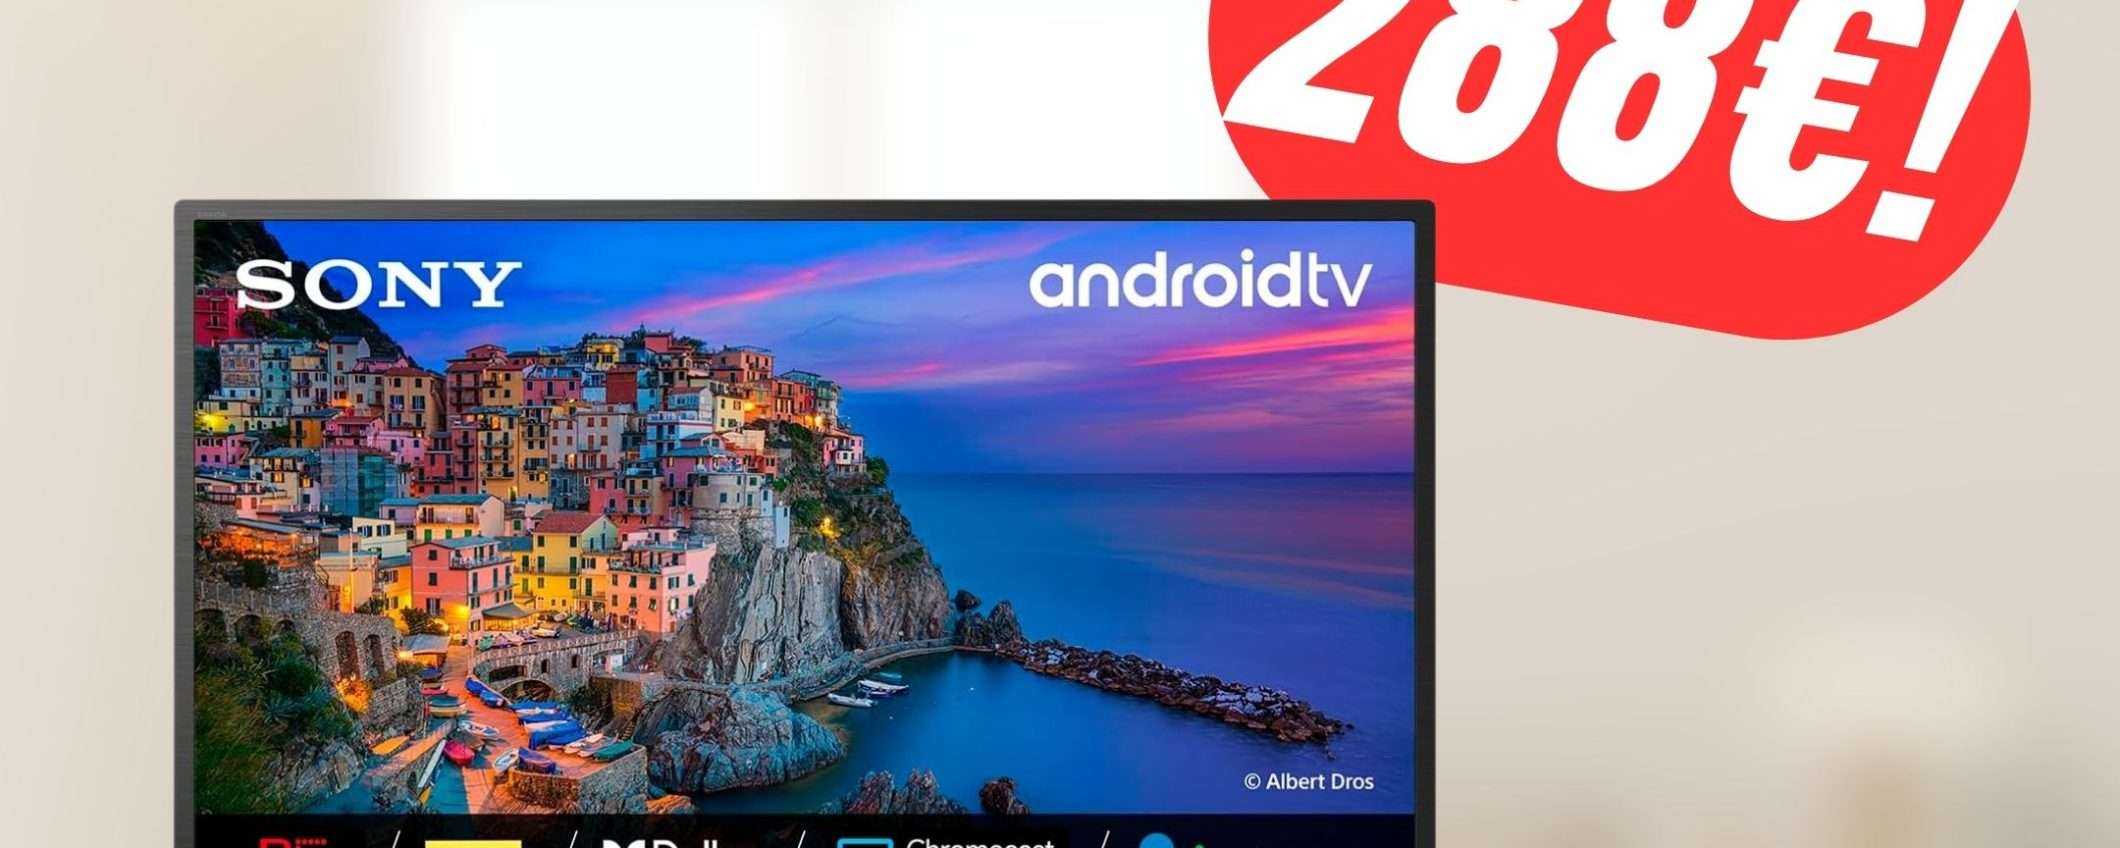 Questa Smart TV Sony BRAVIA costa solo 288€ su Amazon!